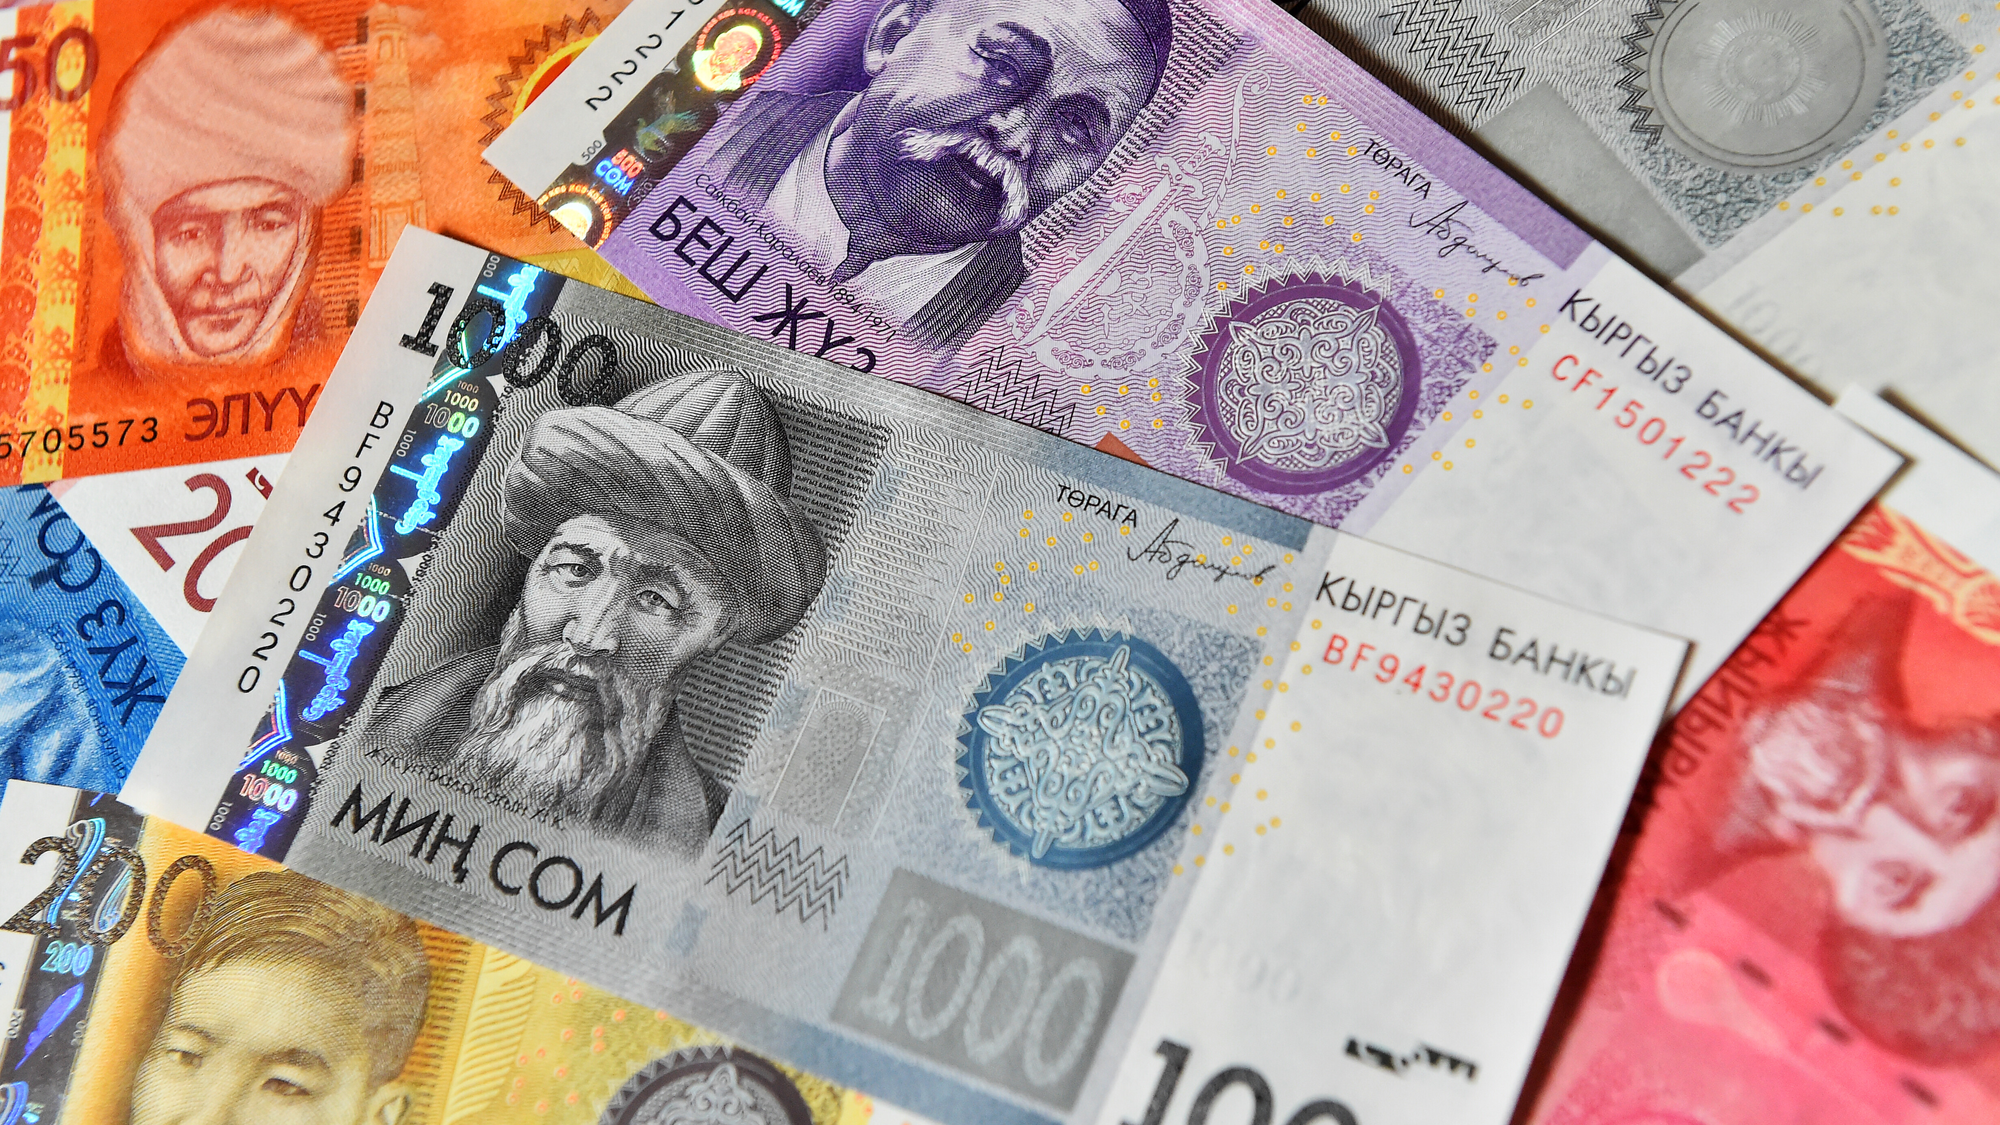 Кыргызстанцу не выплатили зарплату почти на 500 тысяч сомов — после проверки ему вернули деньги